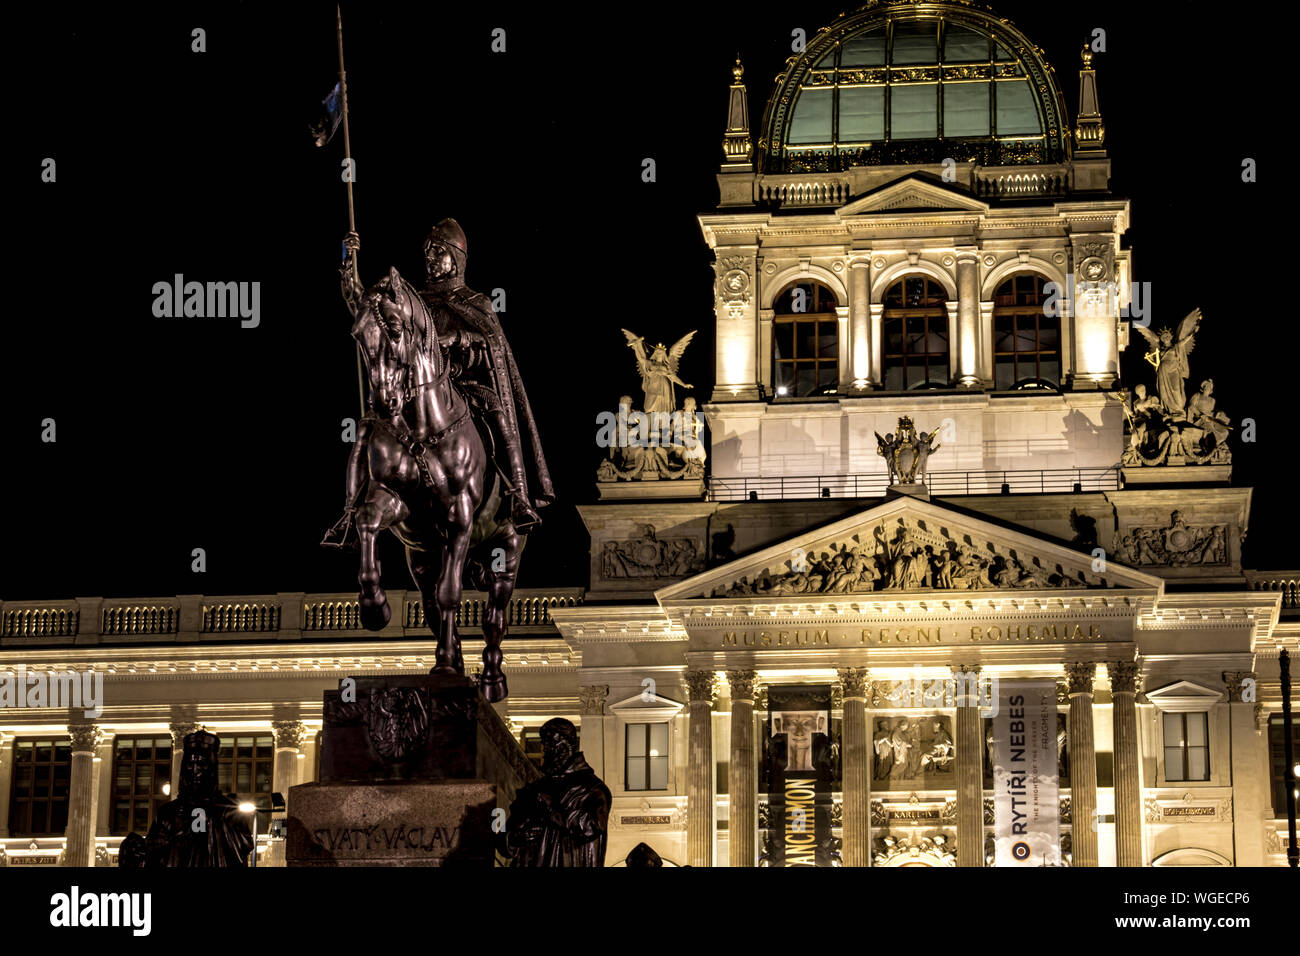 Vista notturna del Museo Nazionale (Národní Muzeum), il neoclassicismo edificio sulla estremità superiore della Piazza Venceslao con la statua di San Venceslao. Praga Foto Stock